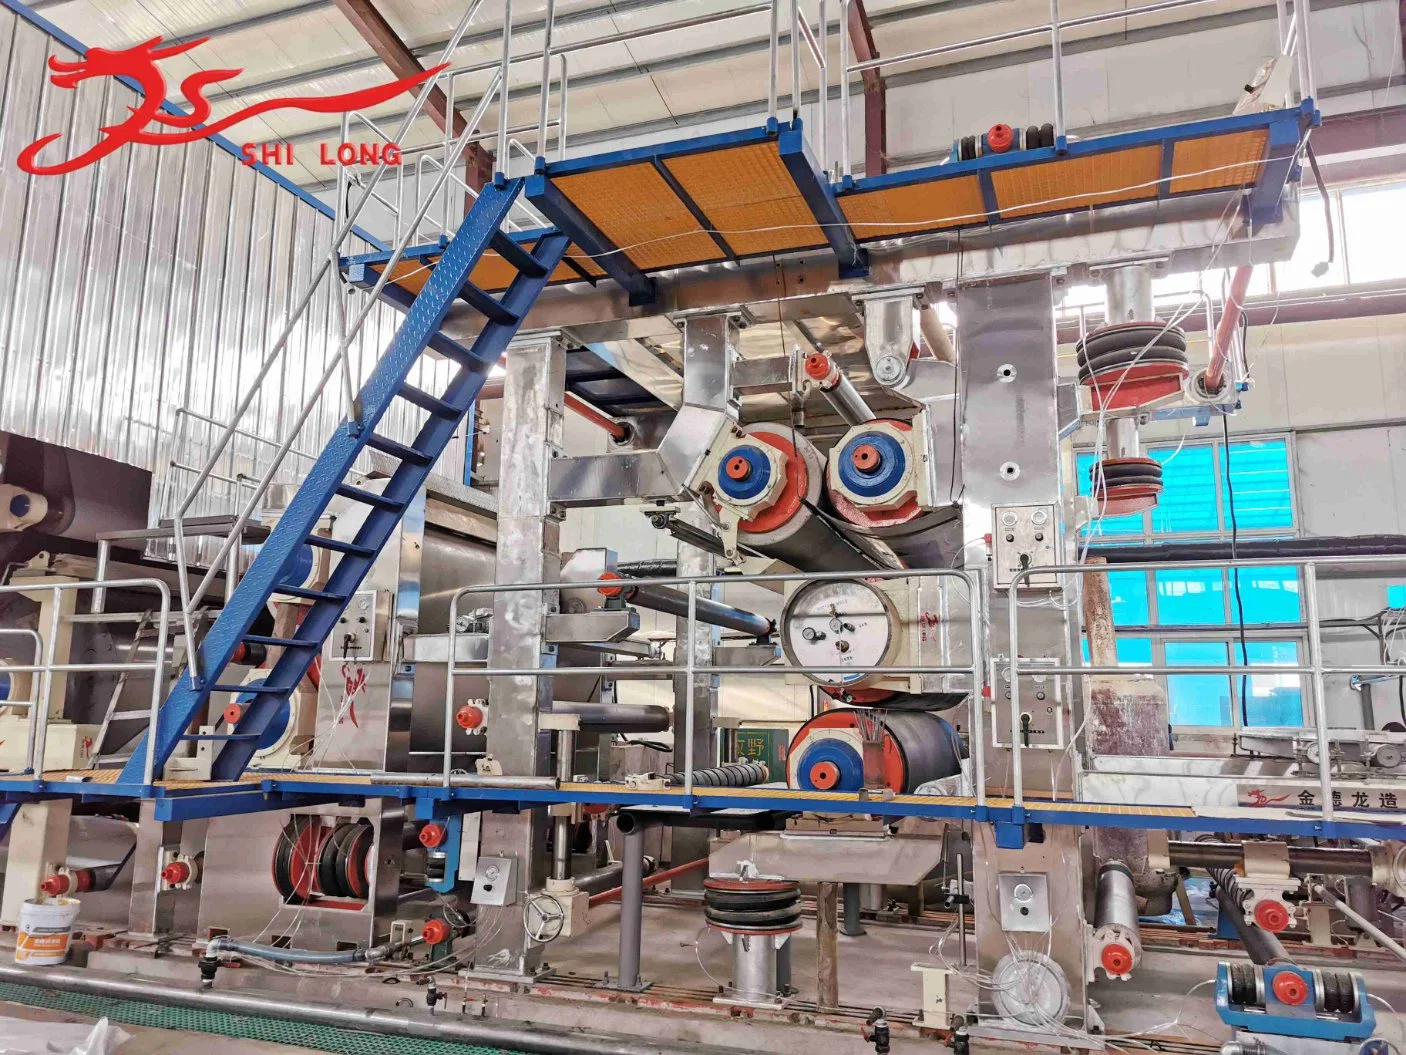 Factory Outlet automatique de rouleau de papier culturel Jumbo d'affaires de ligne de production à partir de la Chine moulin à papier